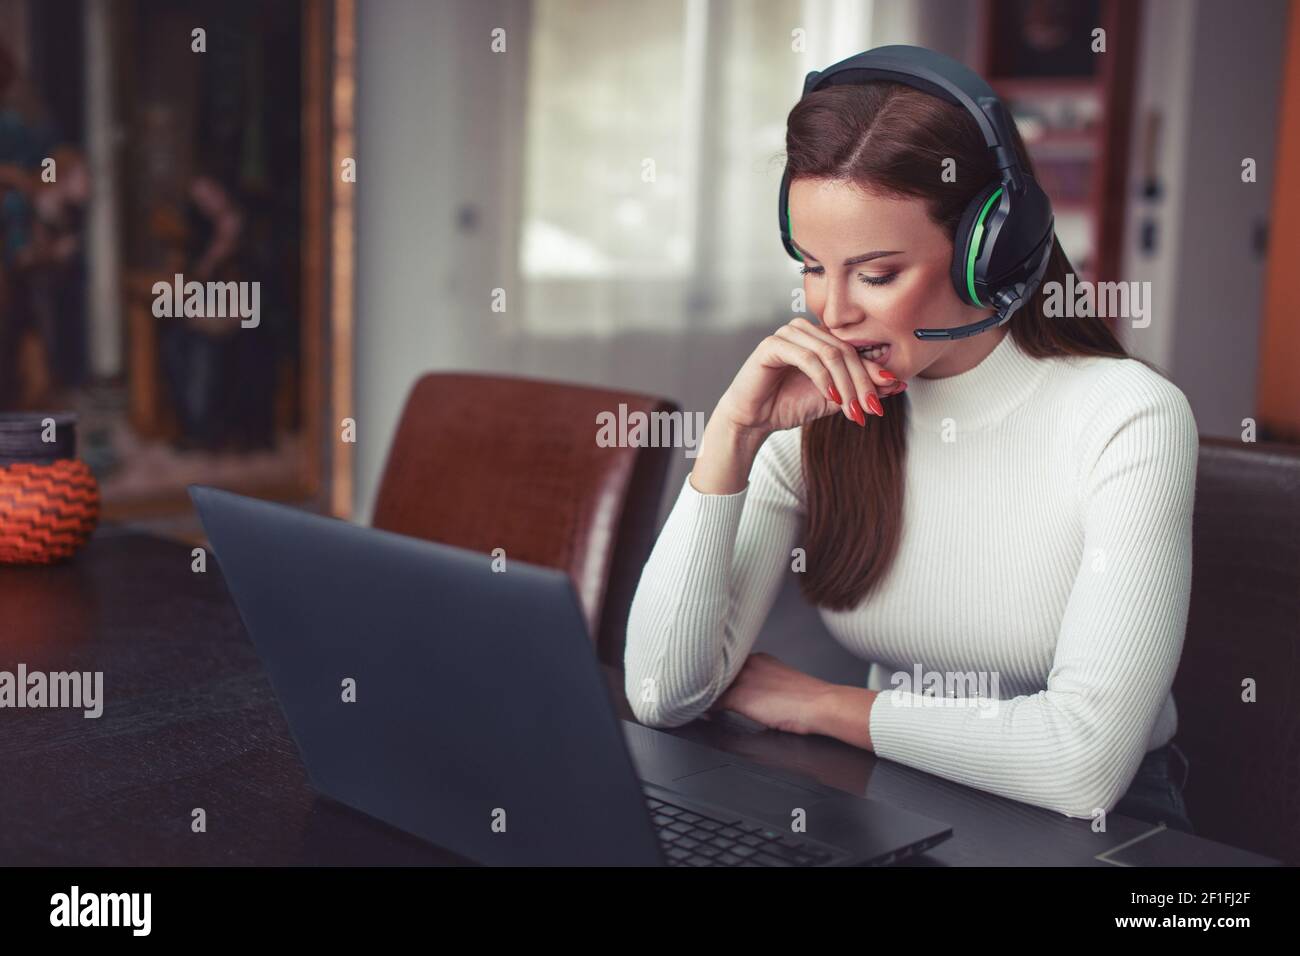 Junge kaukasische Frau mit Headset verdorben etwas online Stockfoto